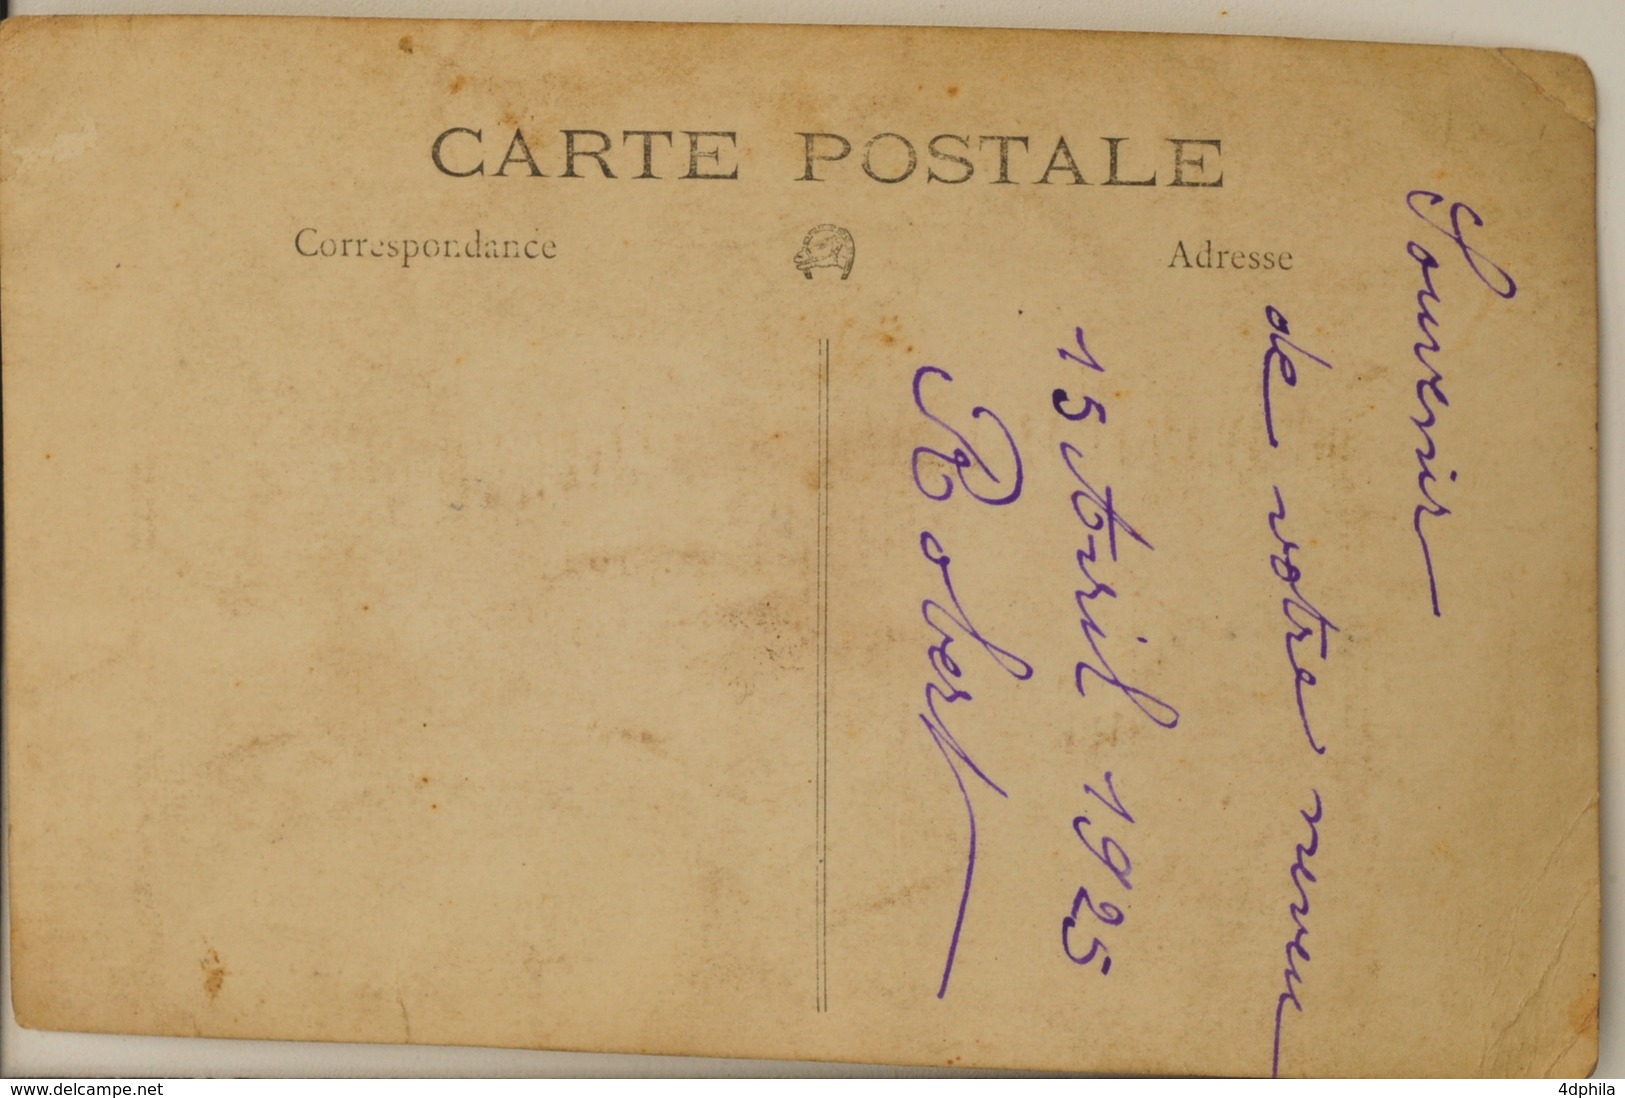 32 Cartes Postales Photographiques Militaires Français - Guerre 1914-18